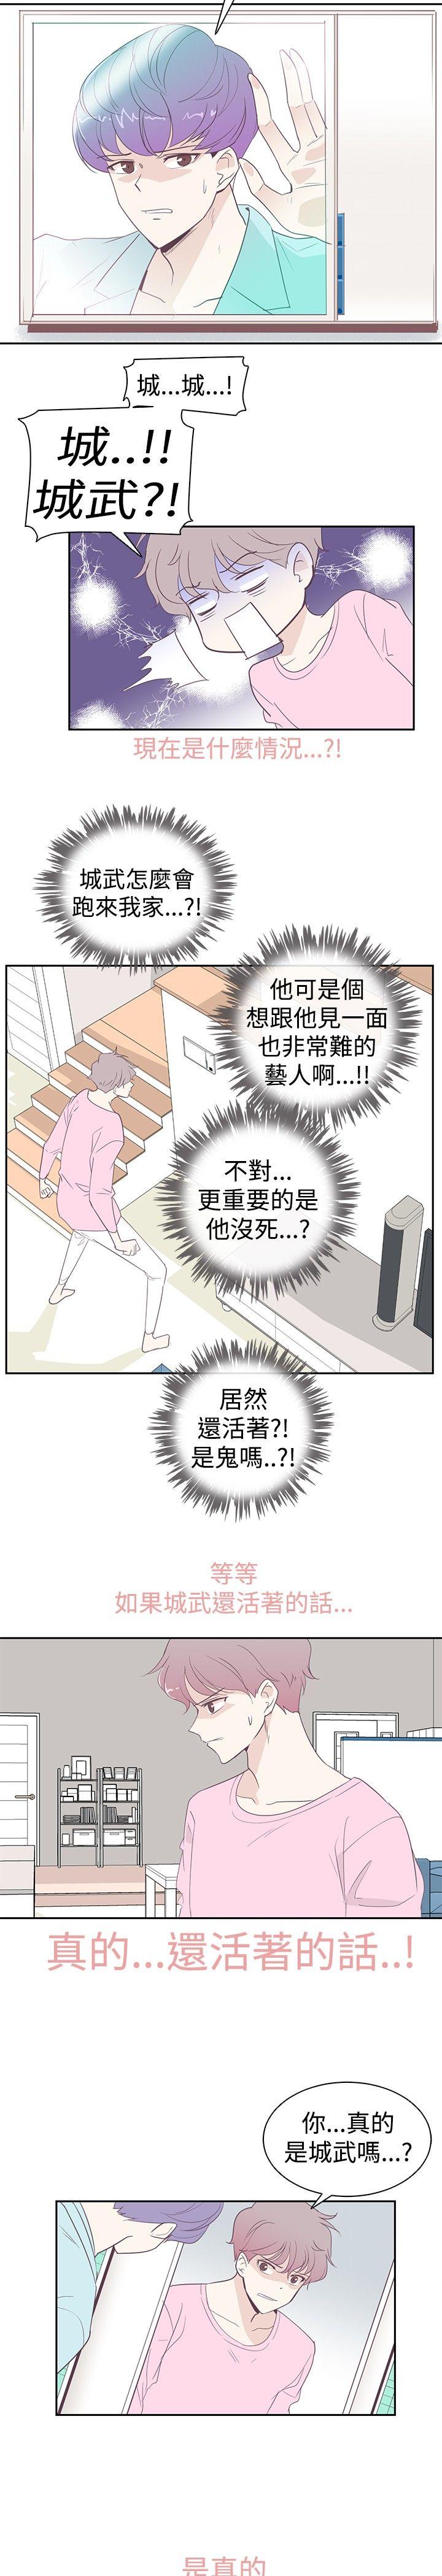 韩国污漫画 追殺金城武 第2话 11